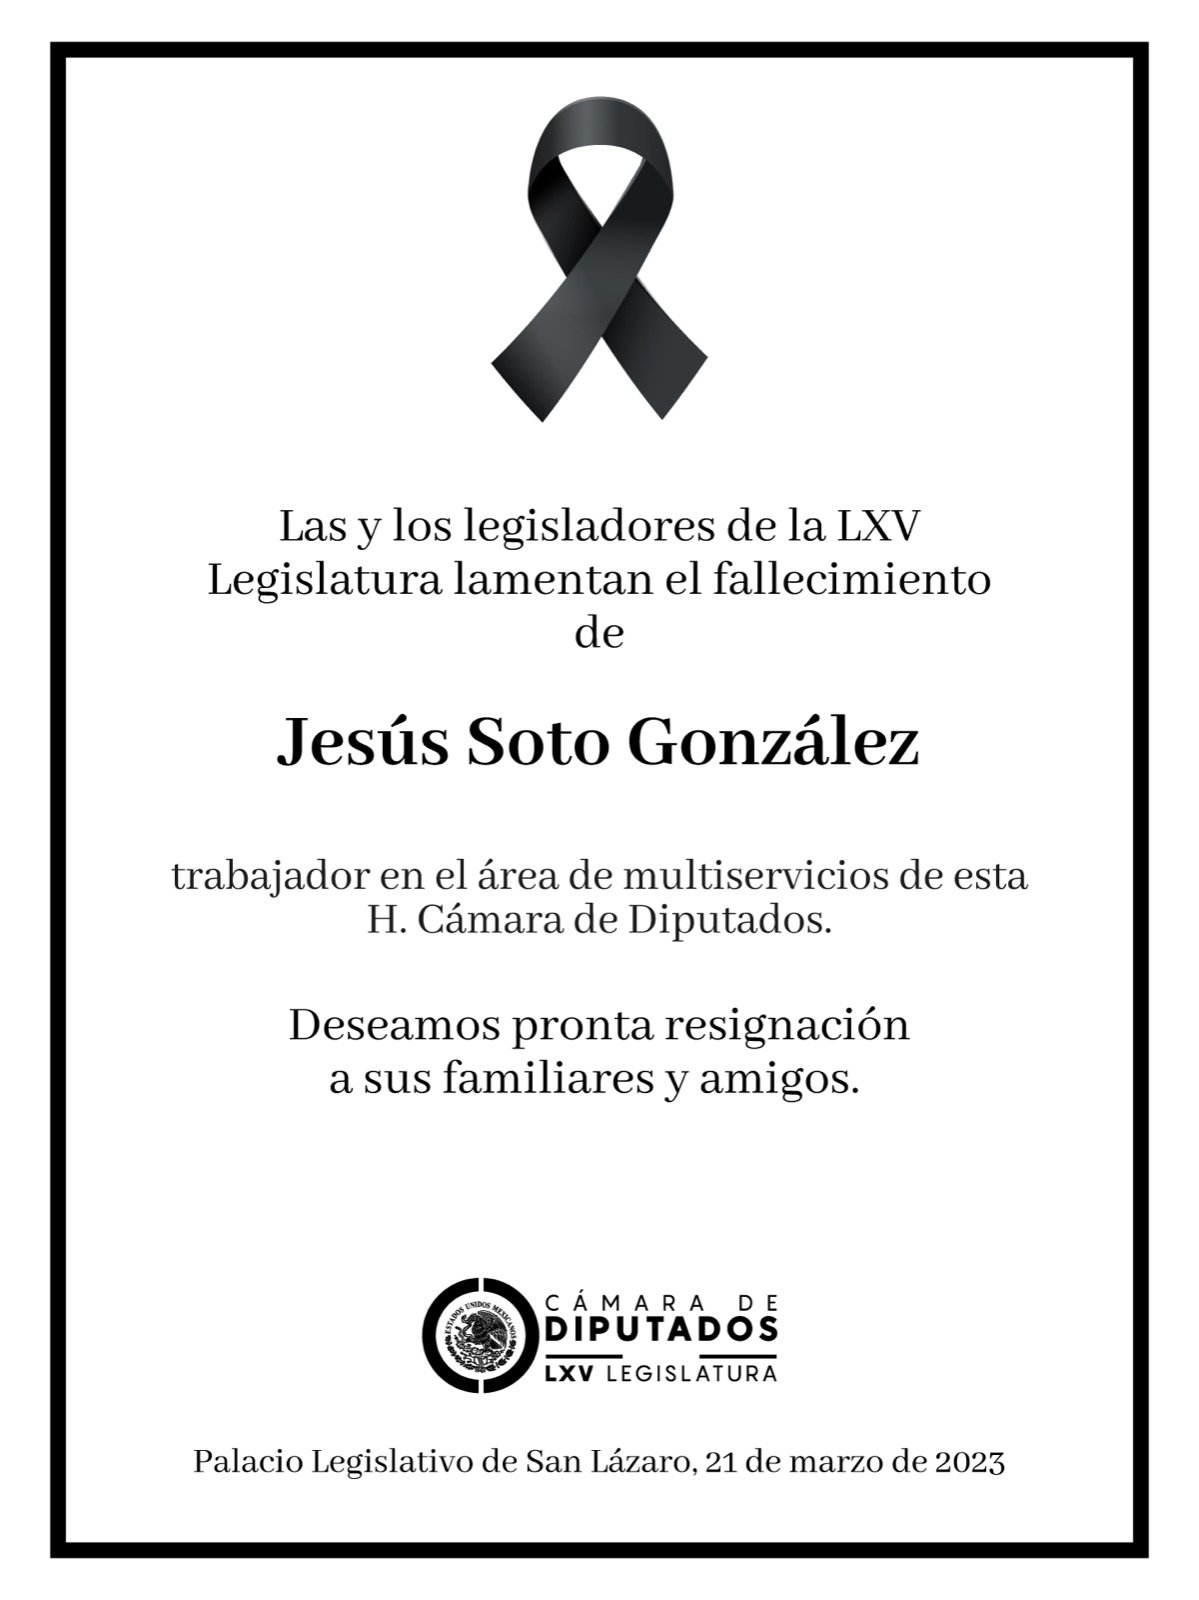 La Cámara de Diputados lamentó el fallecimiento de Jesús Soto González, trabajador del recinto (Twitter/Mx_Diputados)